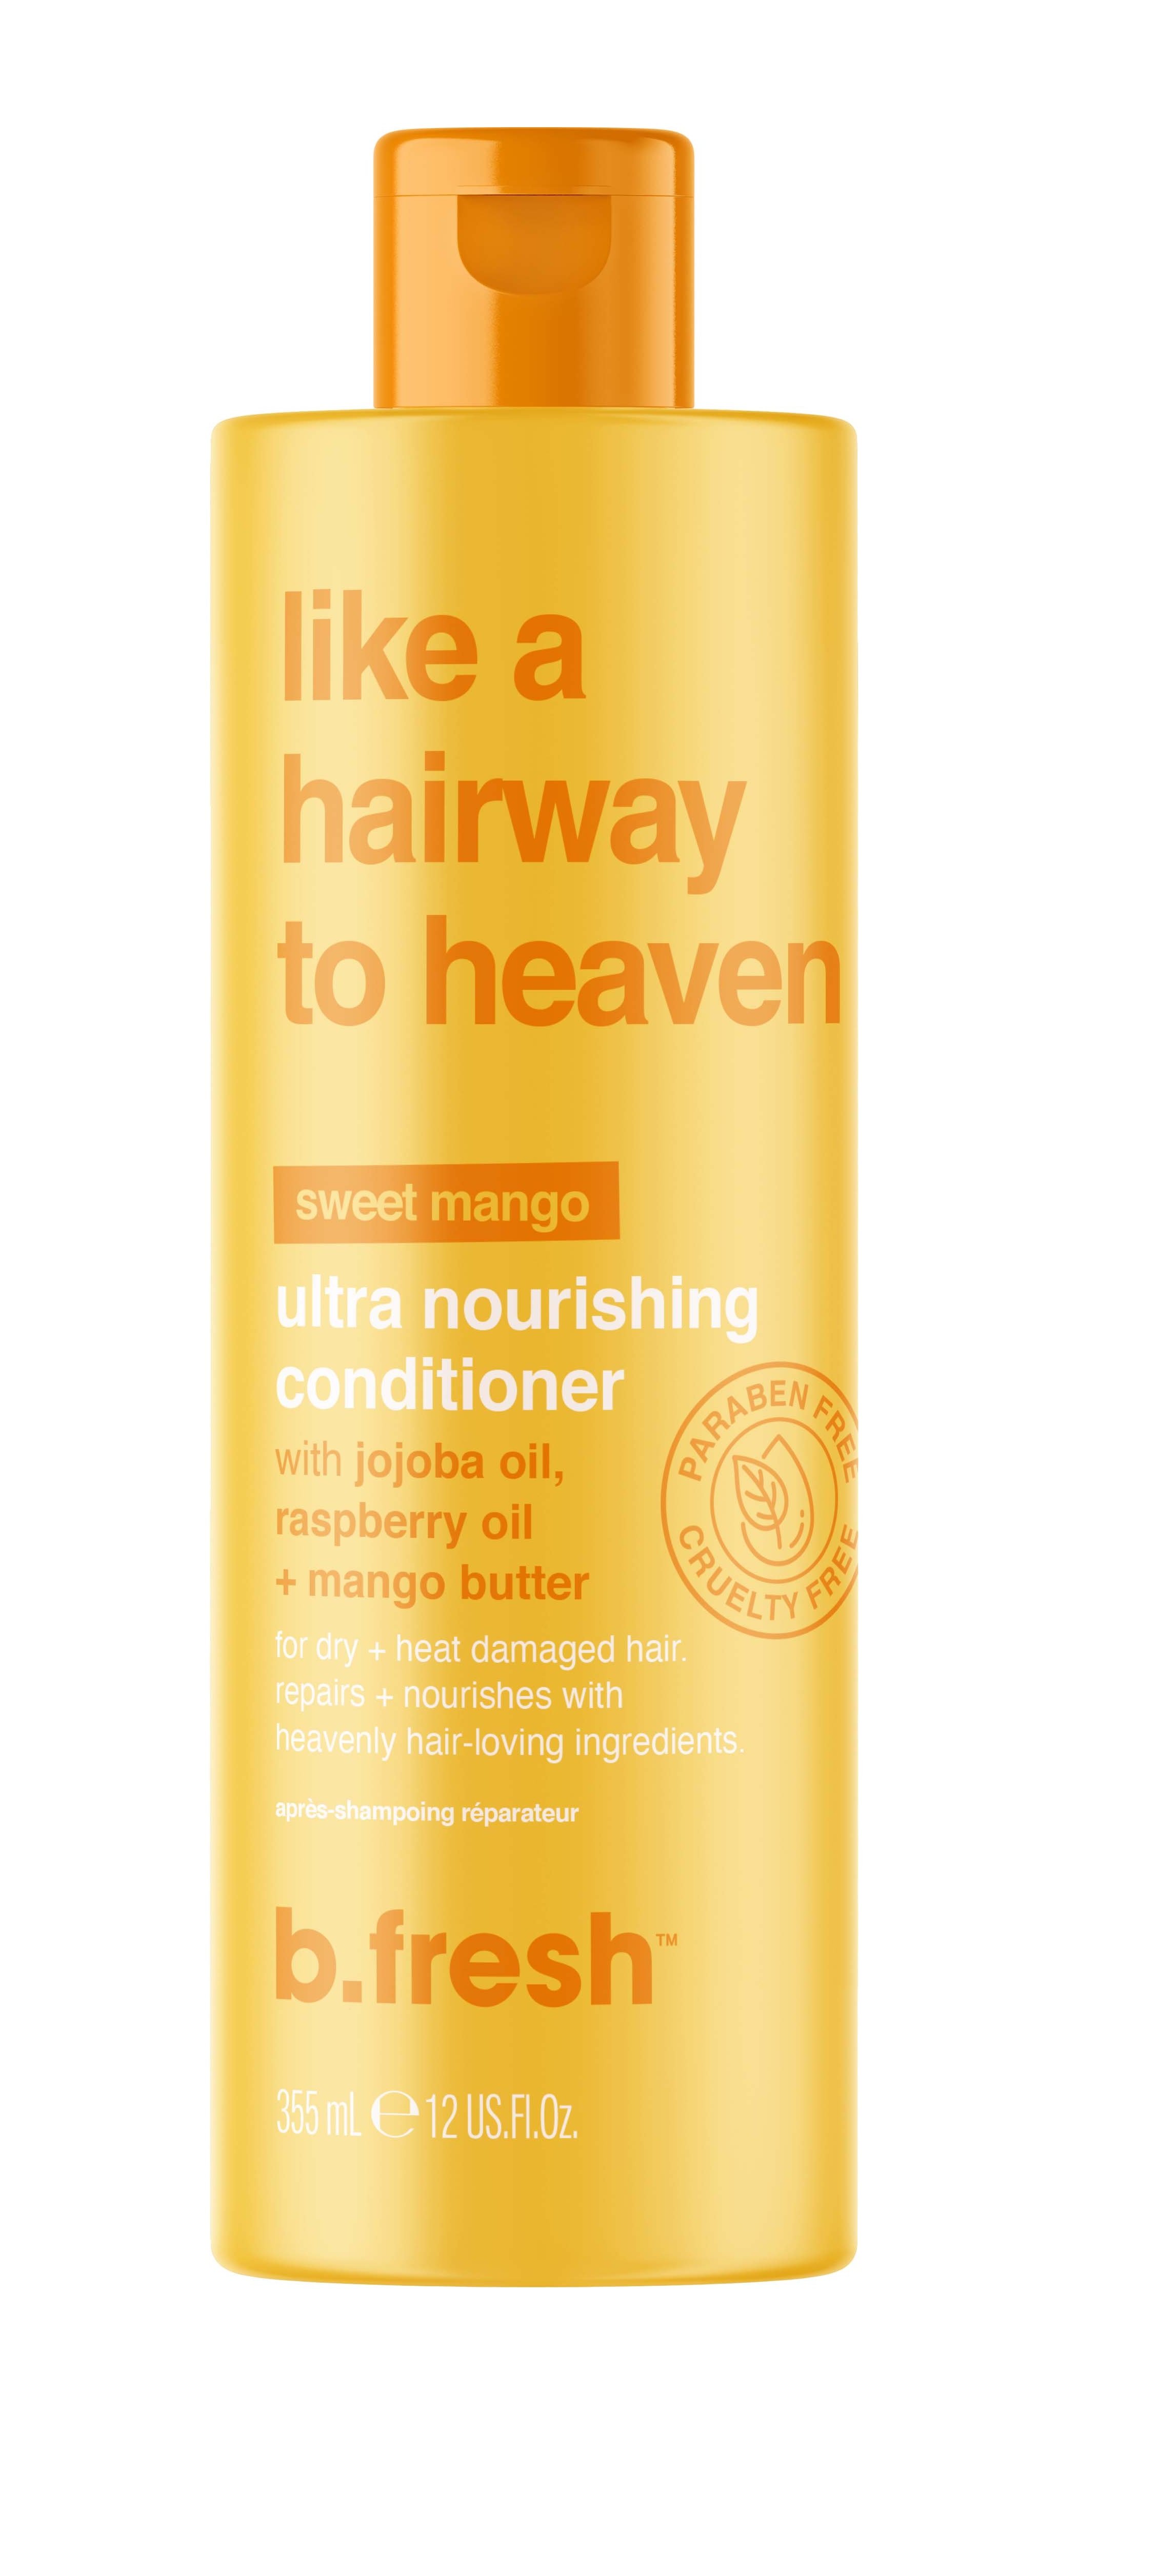 b.fresh - Like A Hairway To Heaven Ultra Nourishing Conditioner 355 ml - Skjønnhet